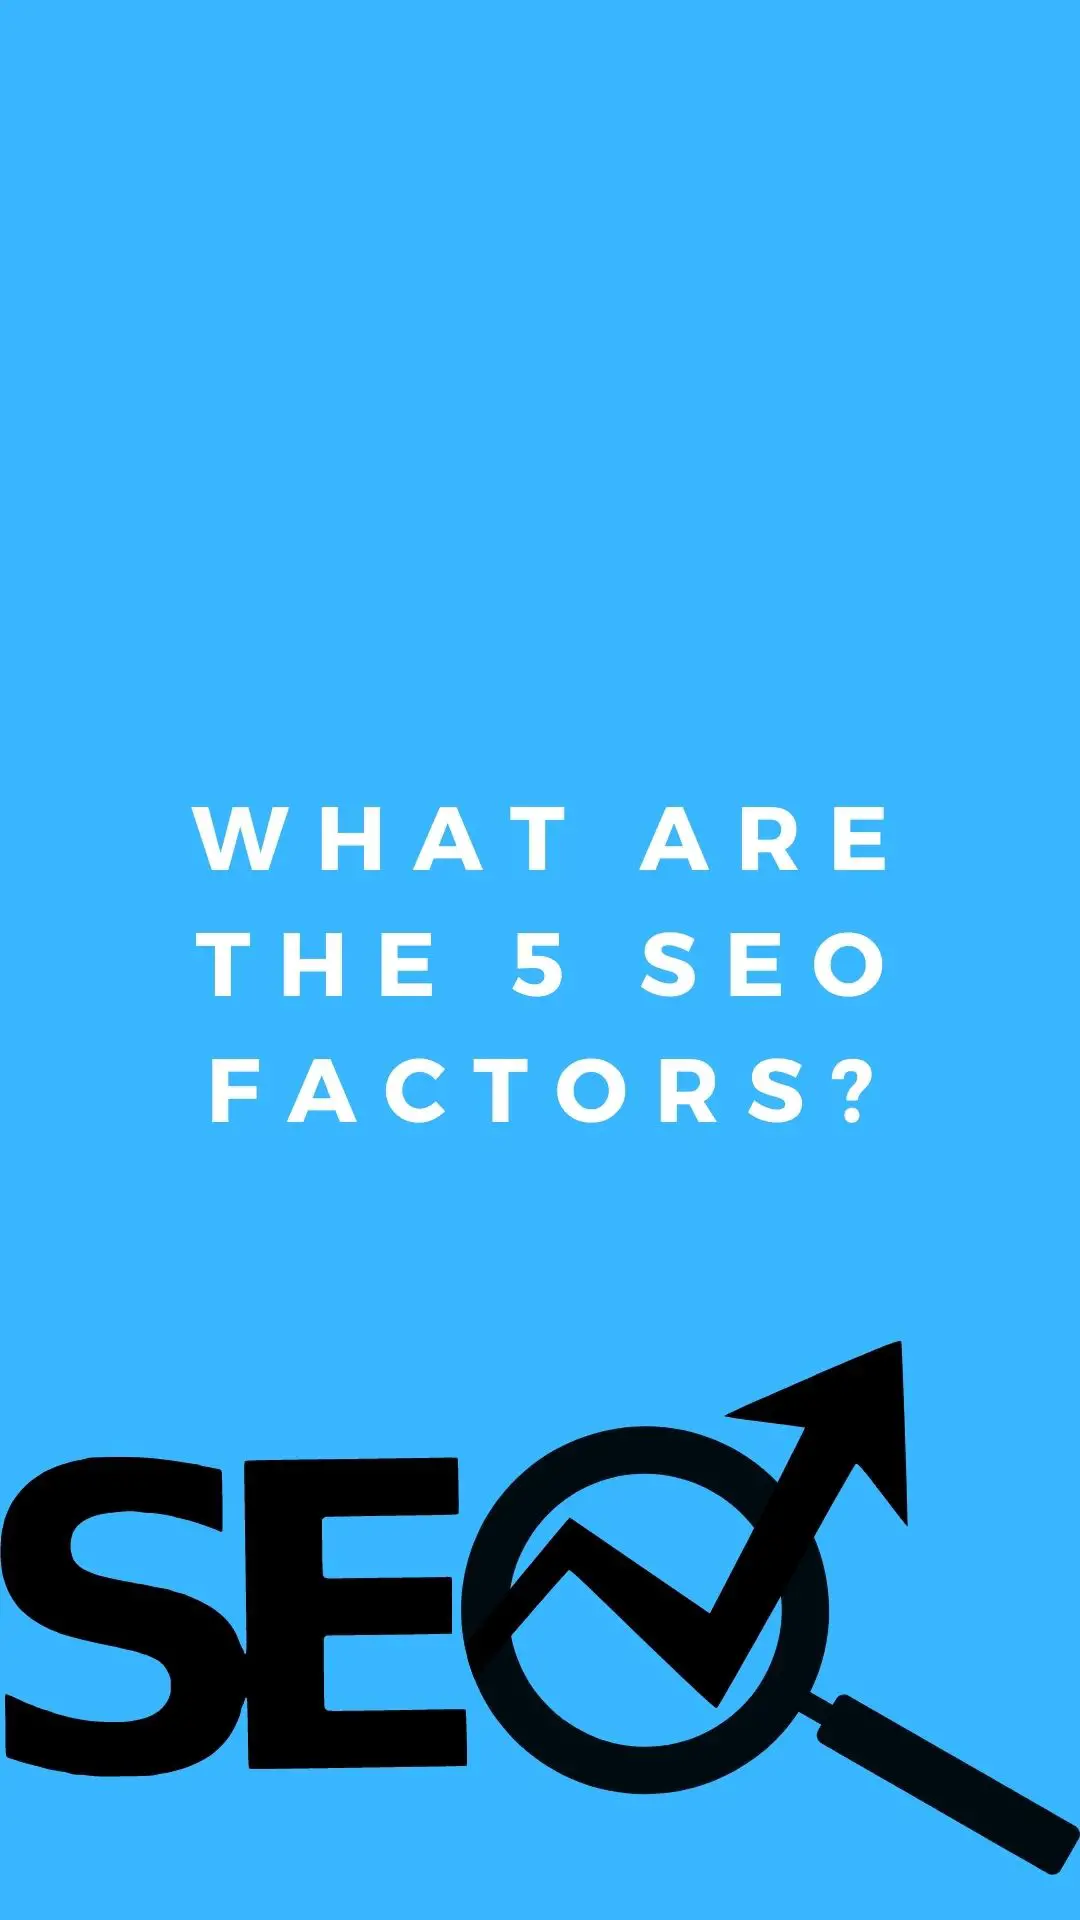 ¿Cuáles son los 5 Factores SEO?: Investigación de palabras clave, optimización de URL, metaetiquetas, etiquetas de encabezado, optimización de contenido